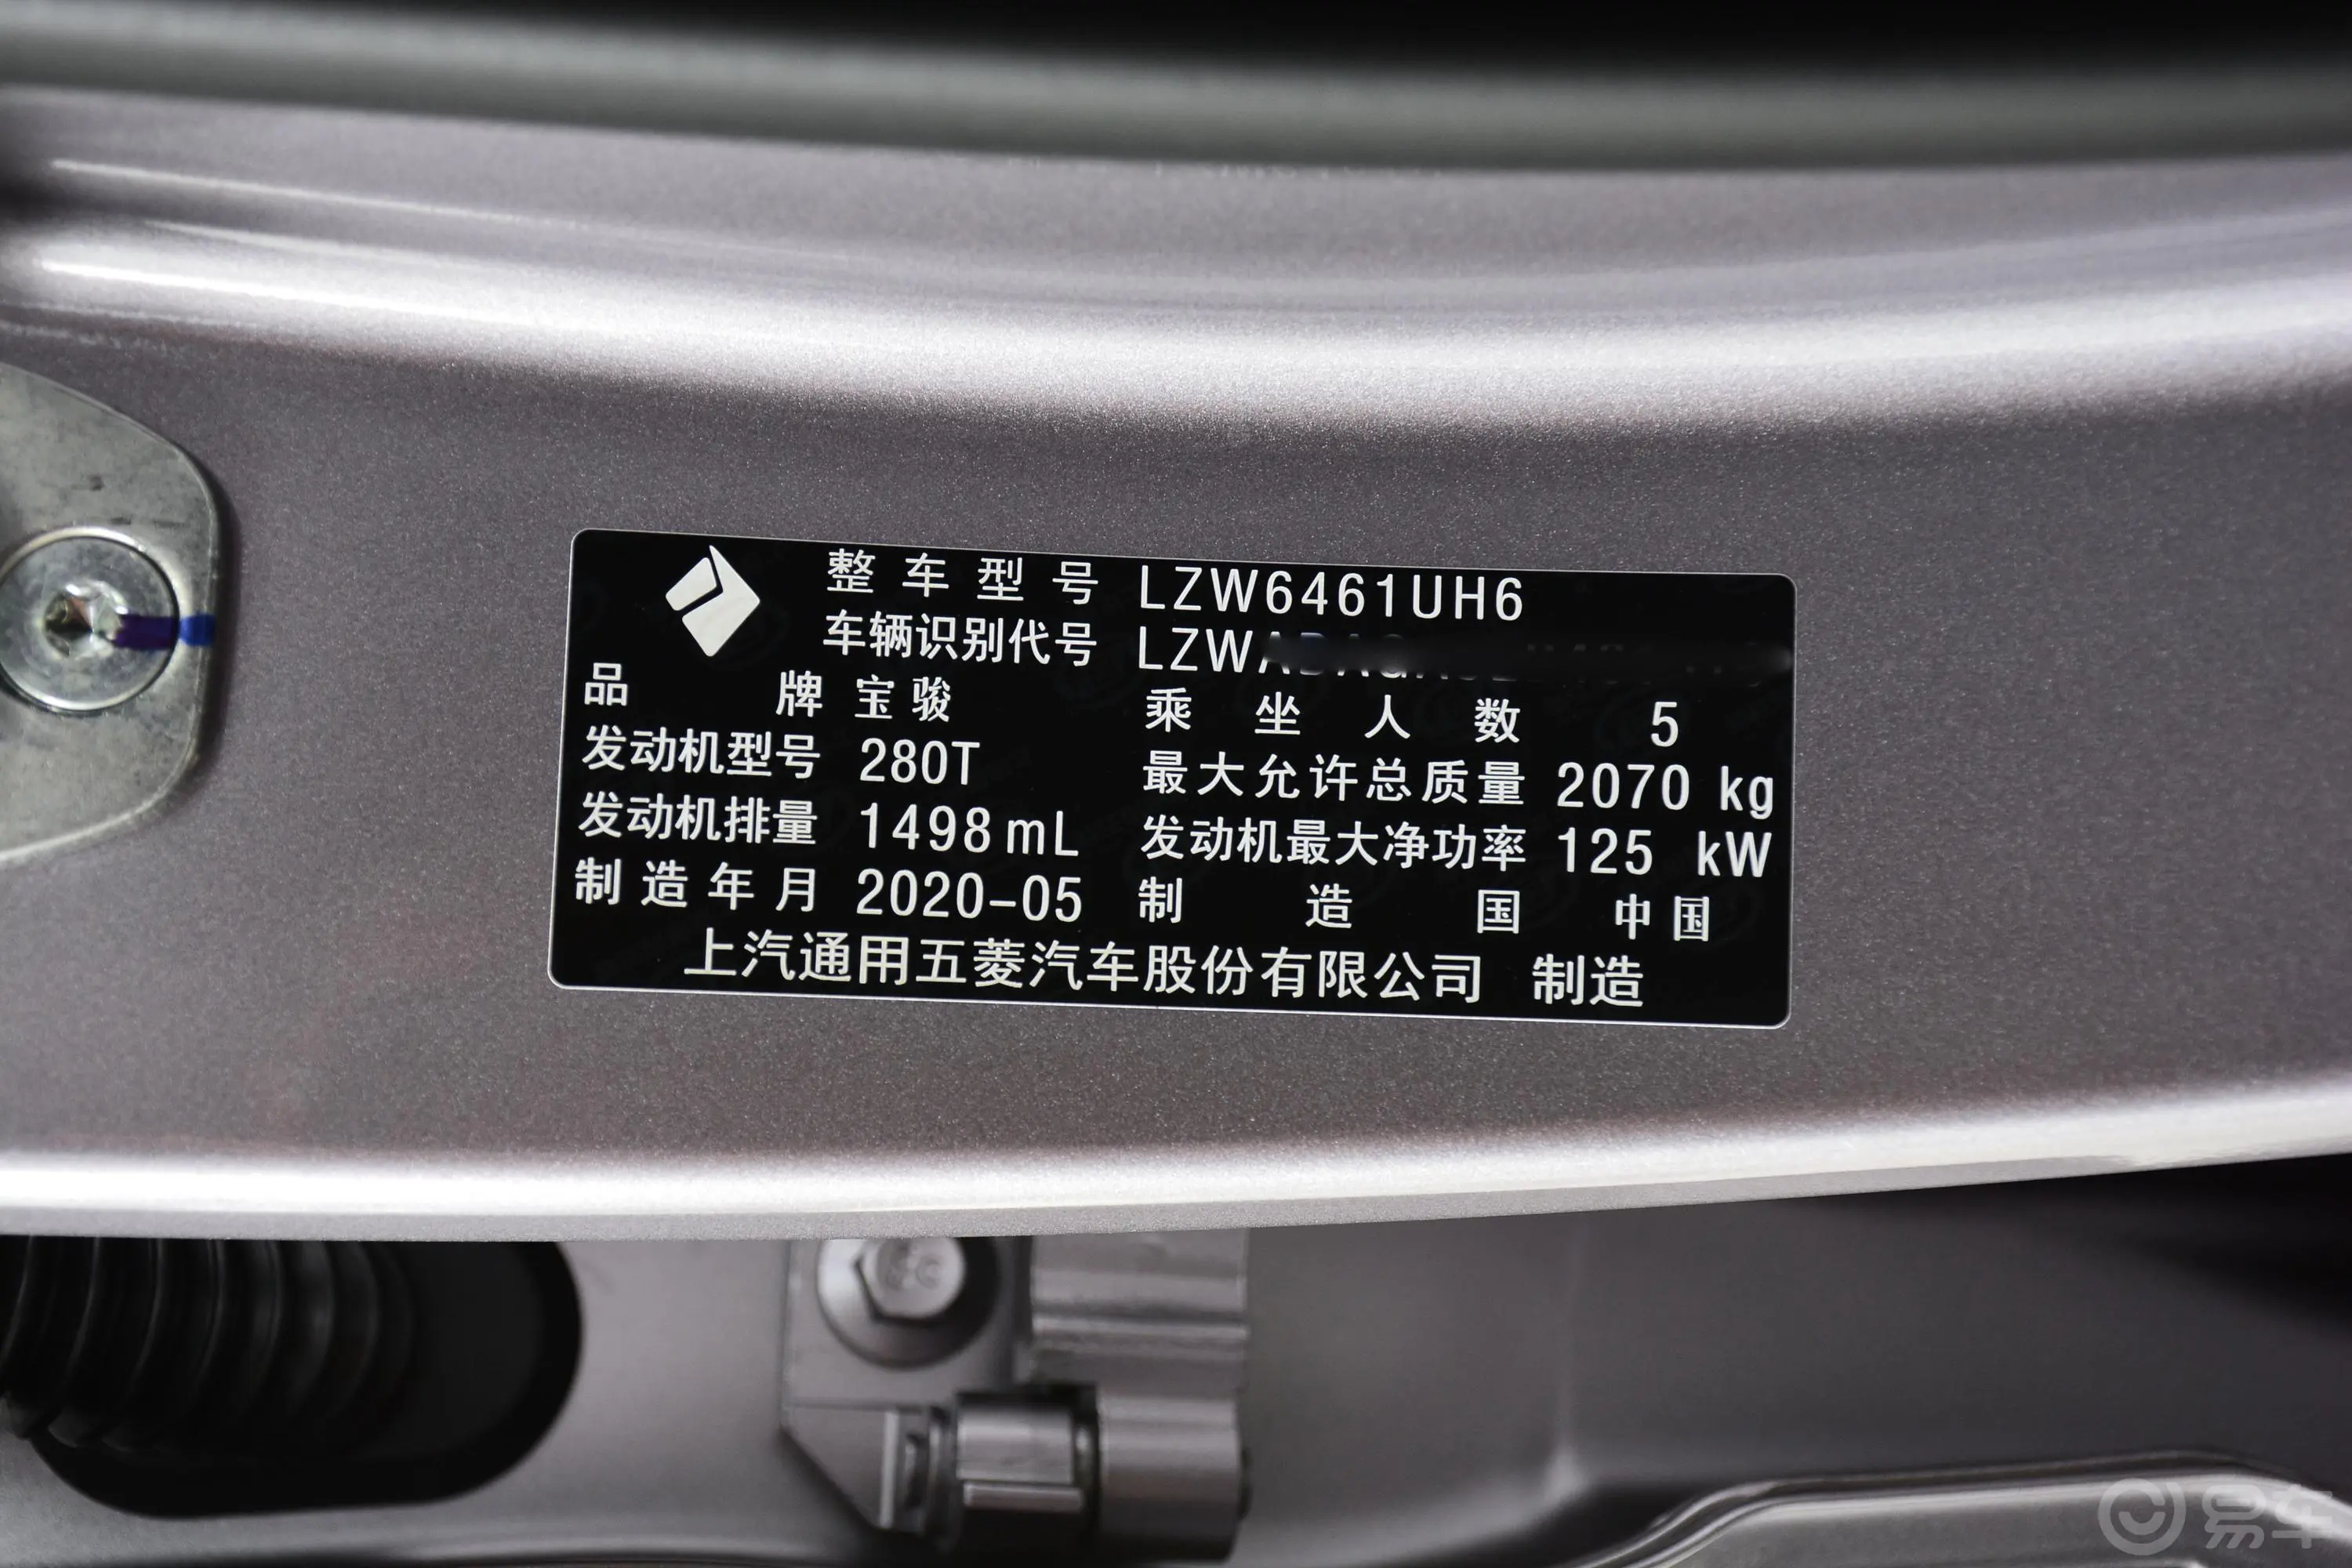 宝骏RS-5300T CVT 智能尊贵型车辆信息铭牌